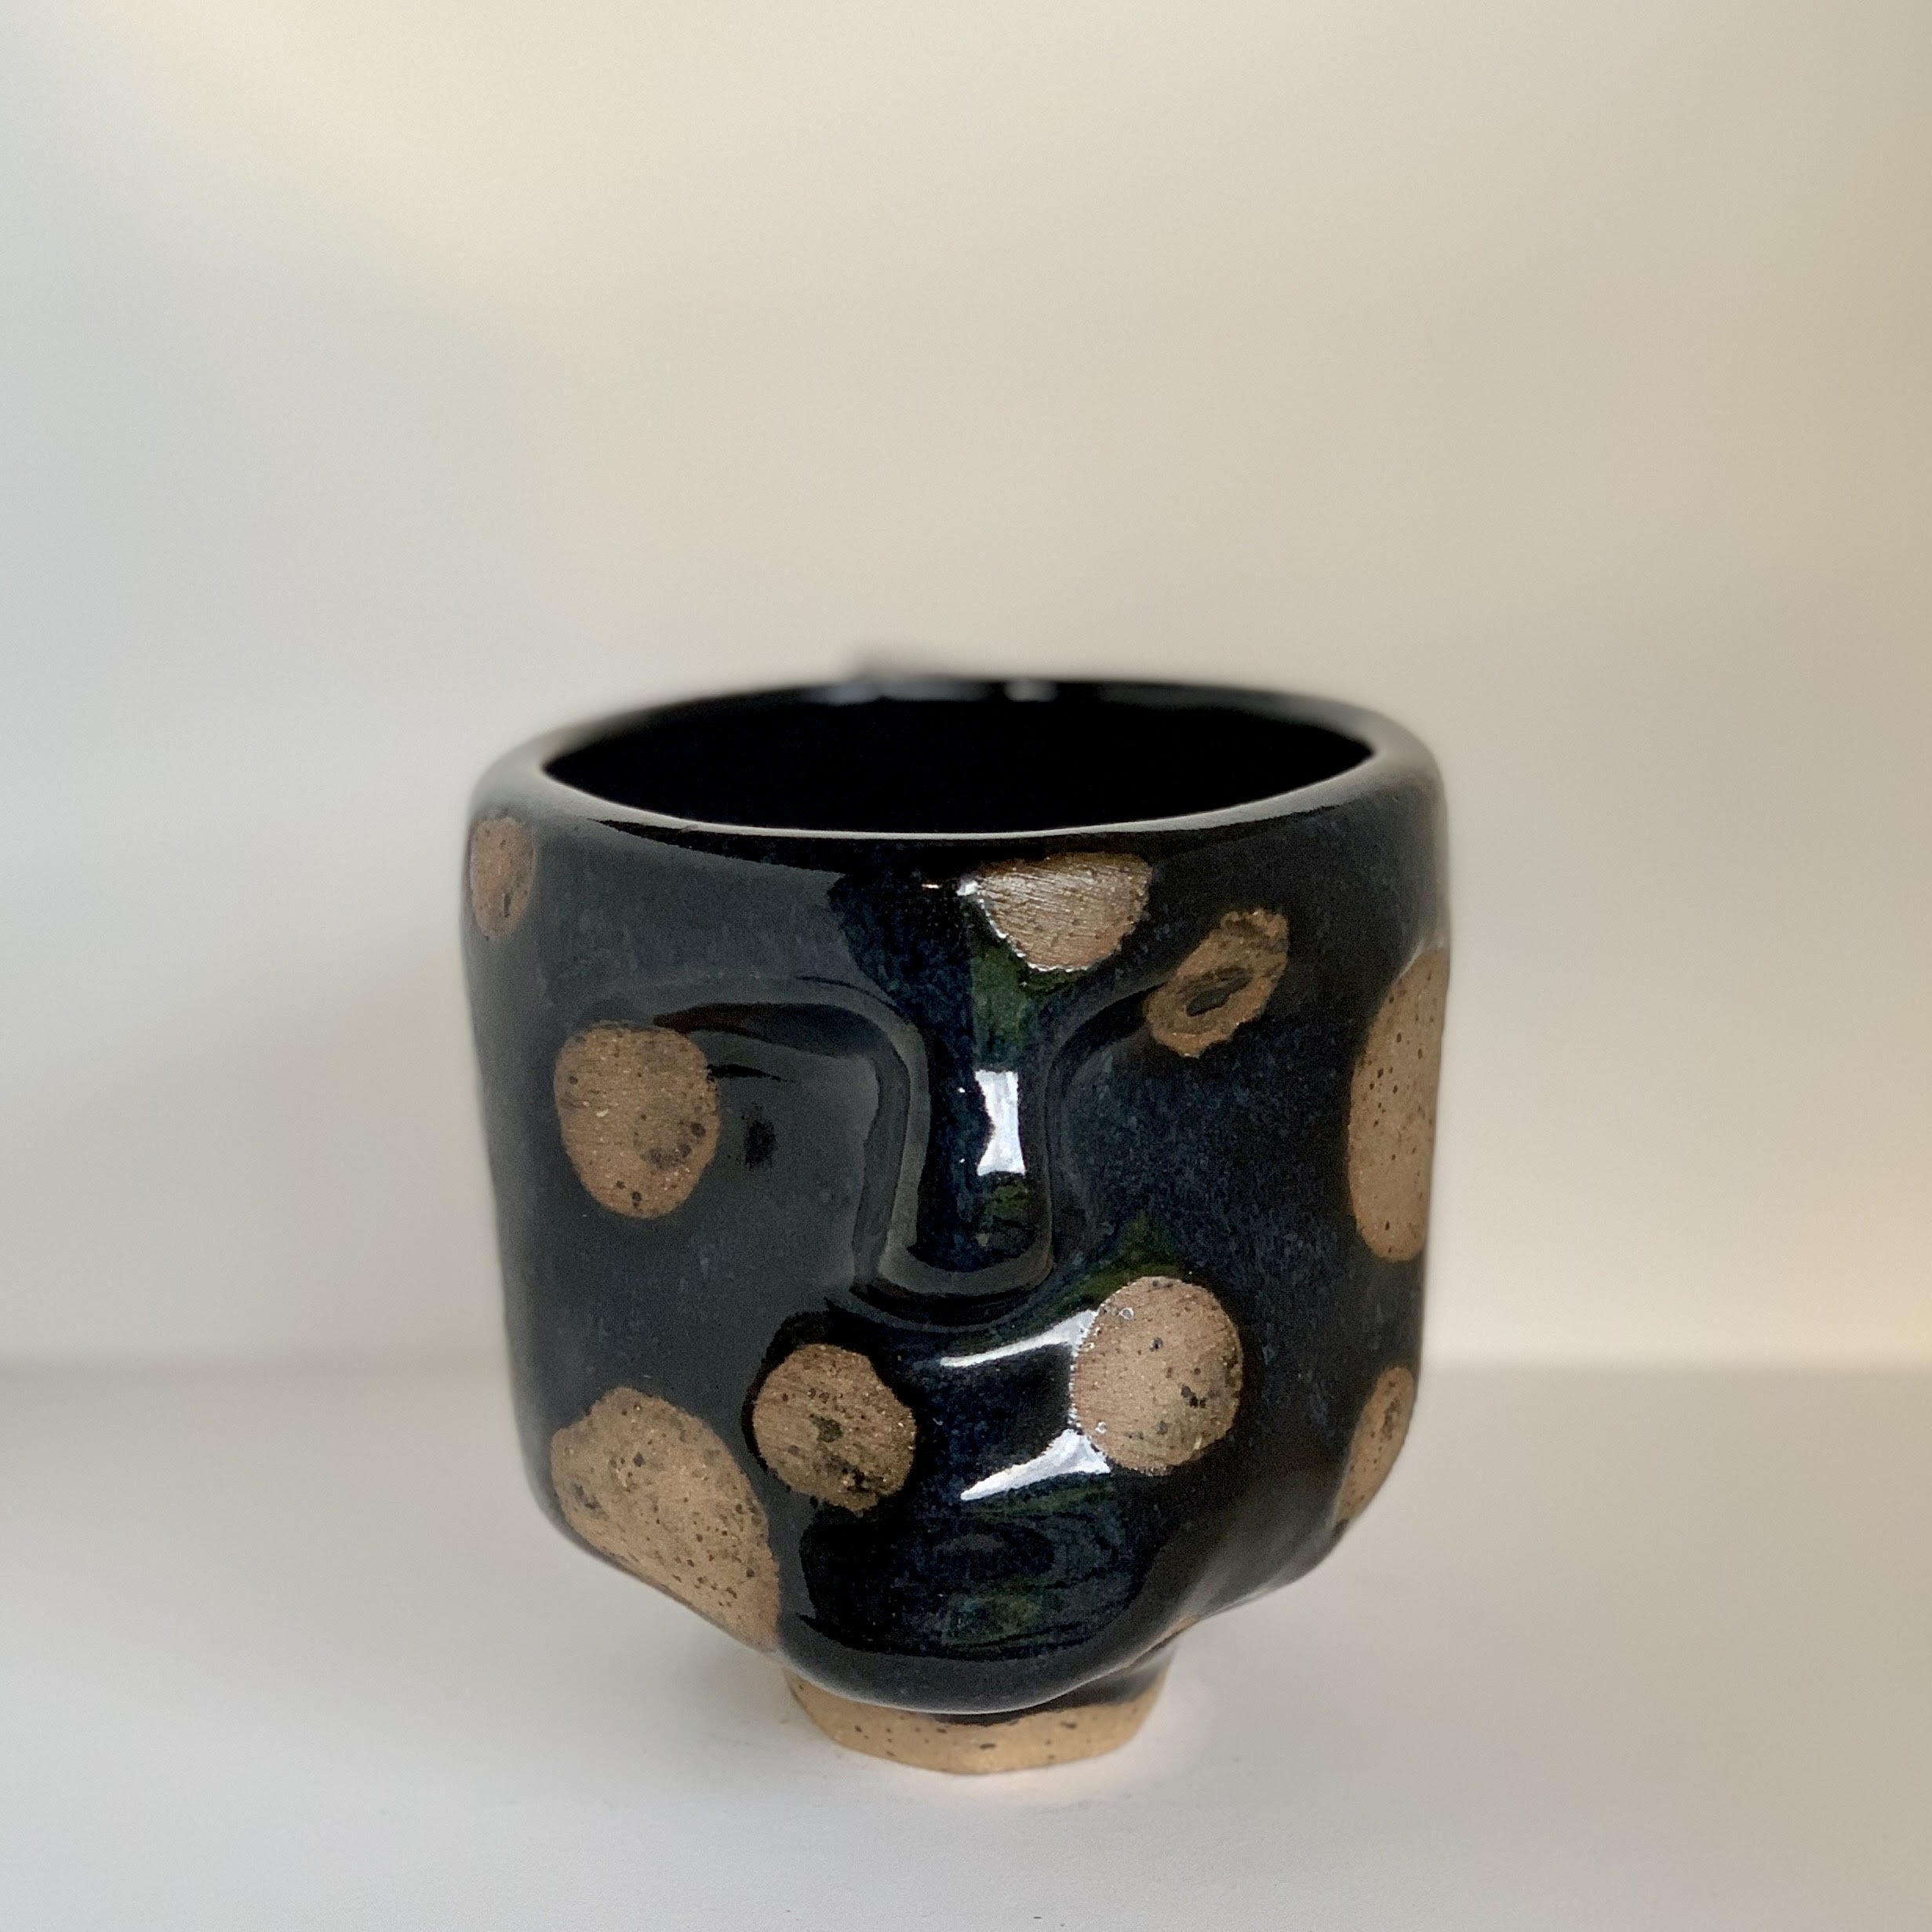 Polka Dot Mug with Naked Resist and Black Glaze